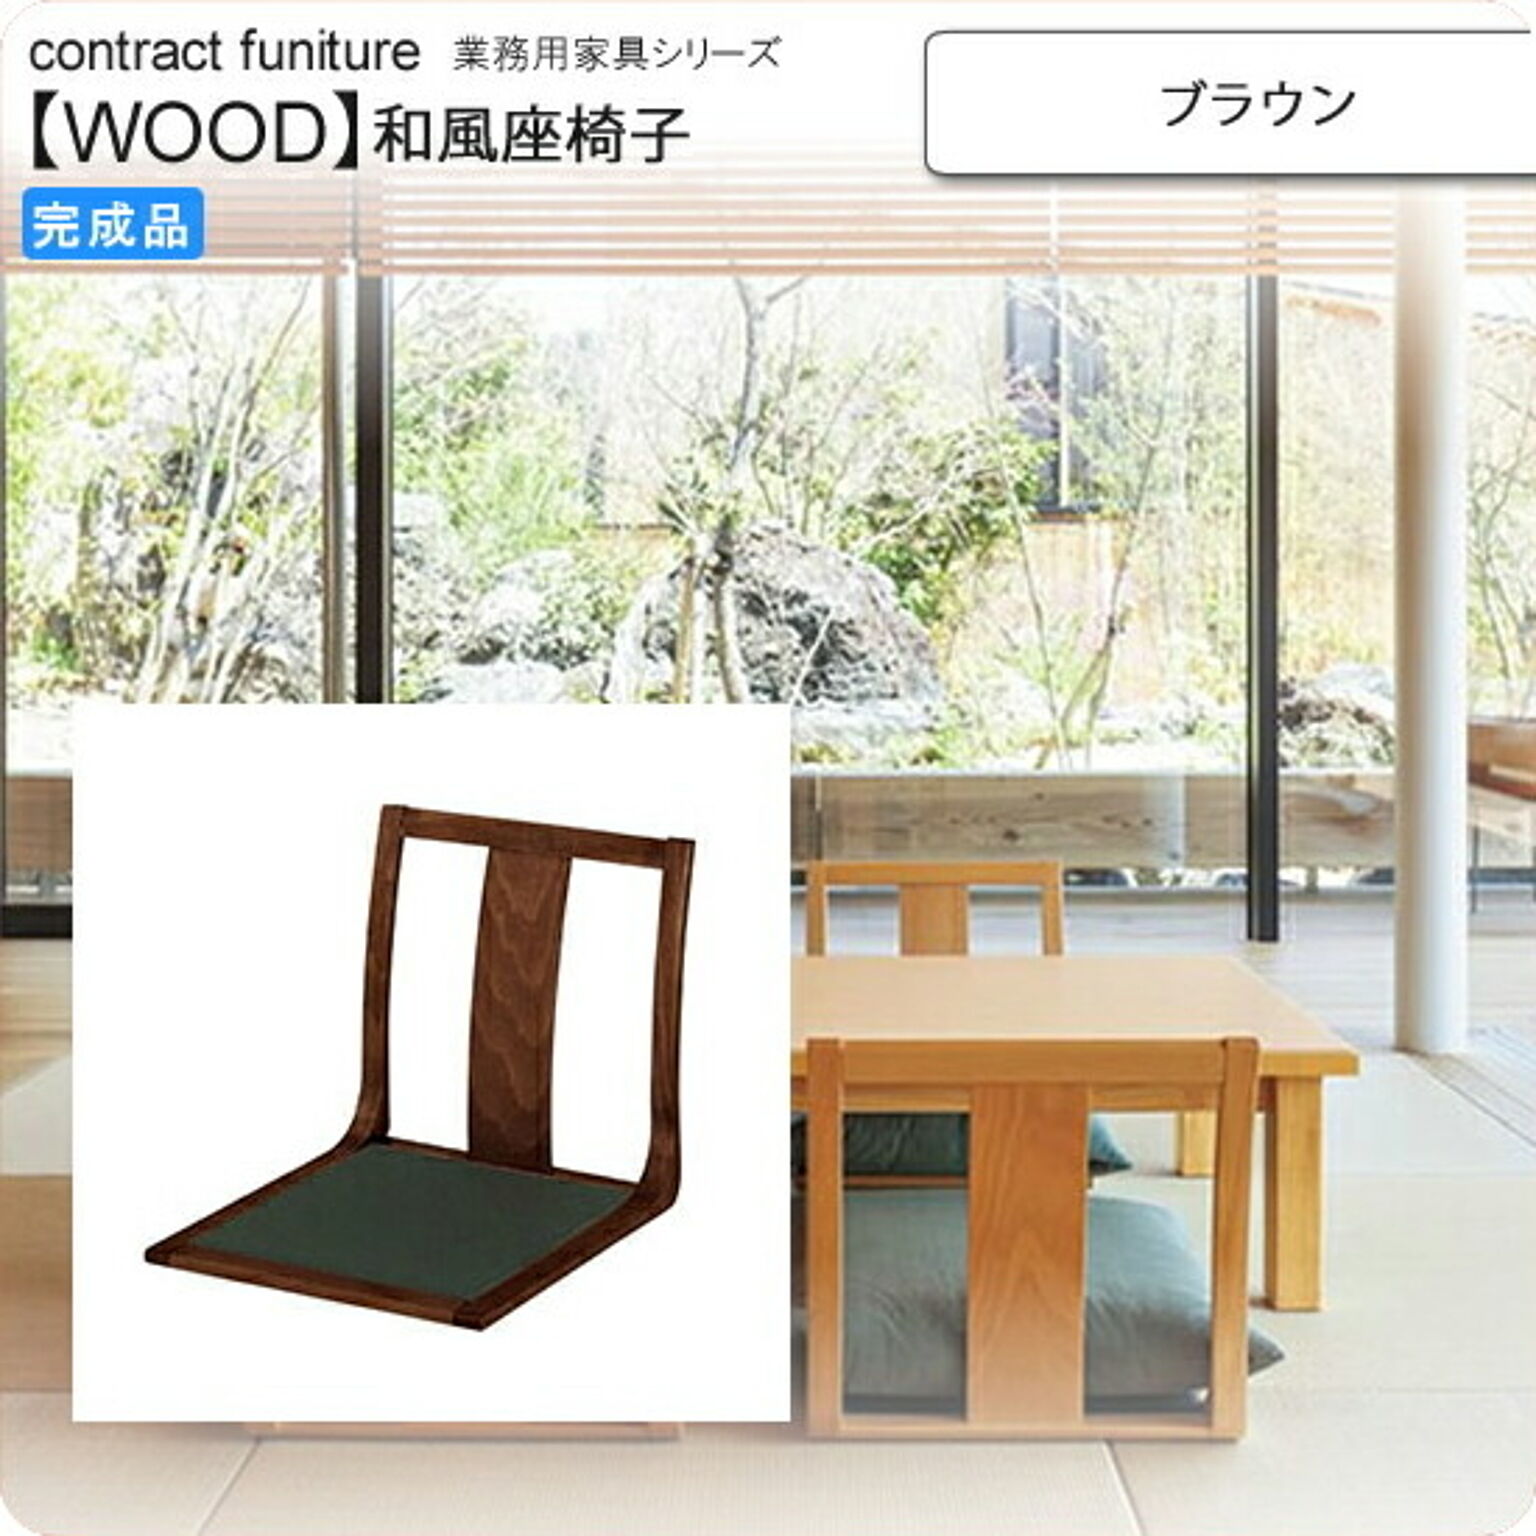 座椅子 ブラウン 座椅子 業務用家具：wood japaneseシリーズ★ コーエ ブラウン(brown) (和風)